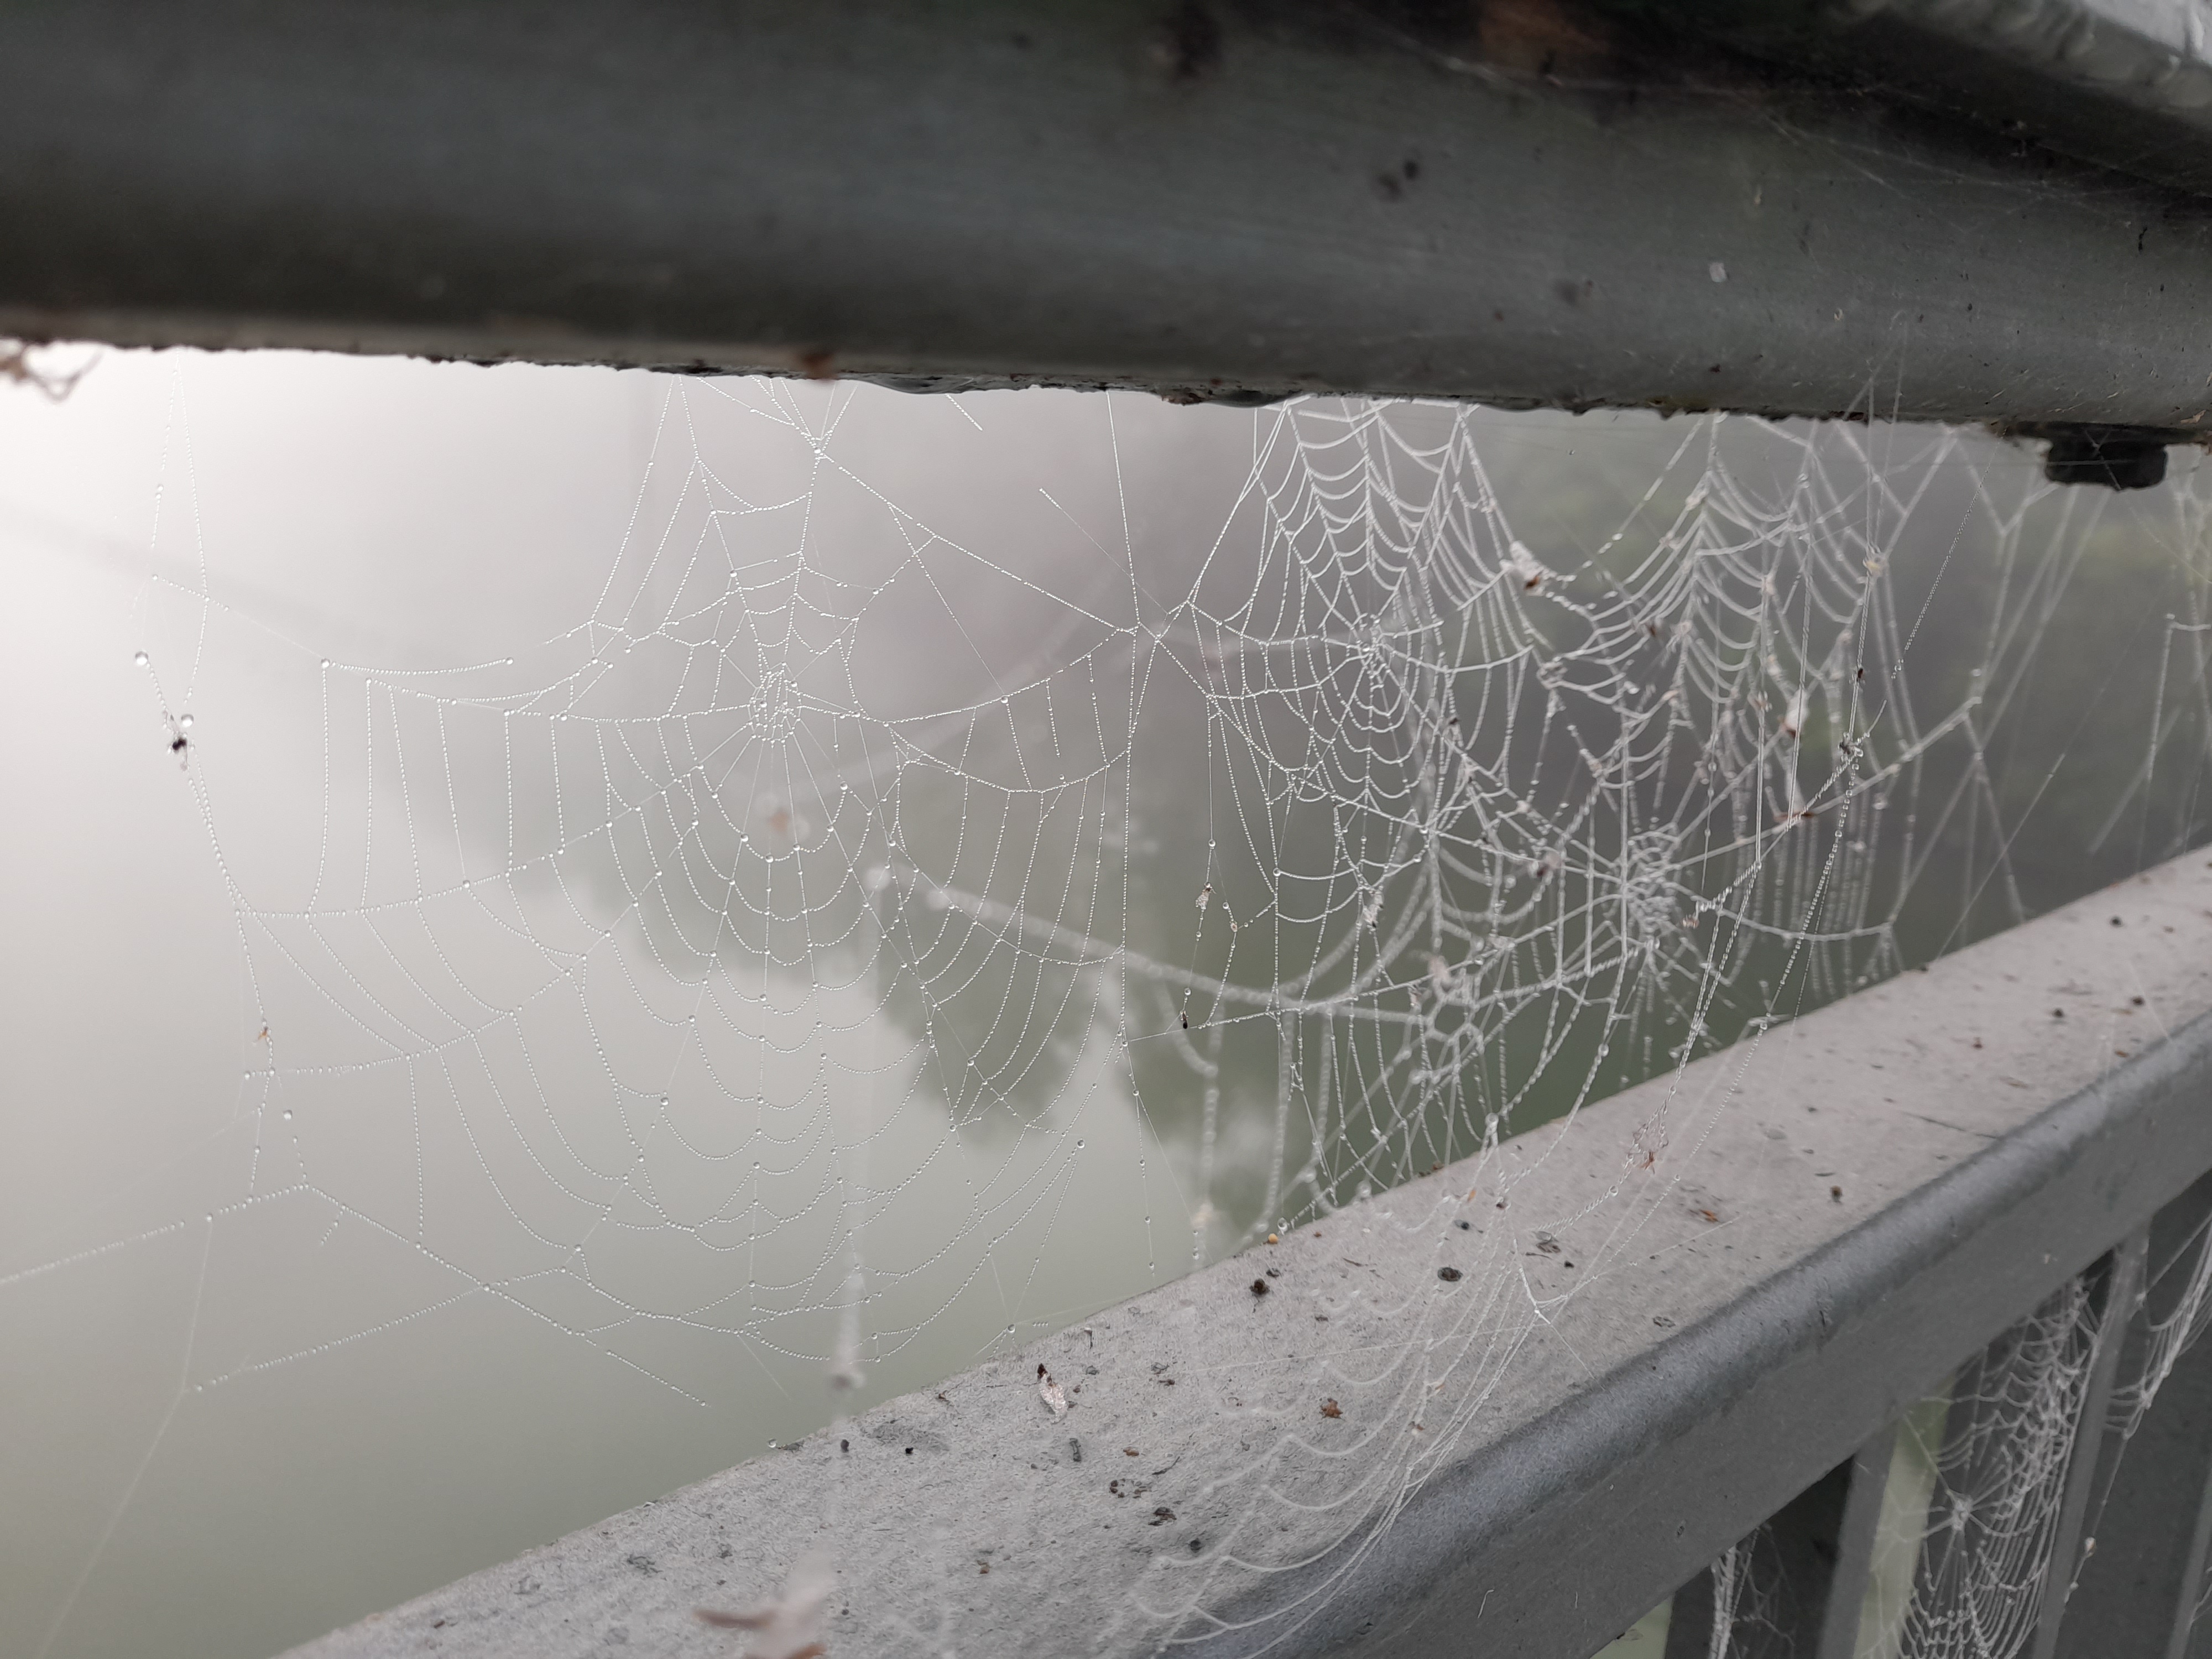 Spinnetz im Nebel